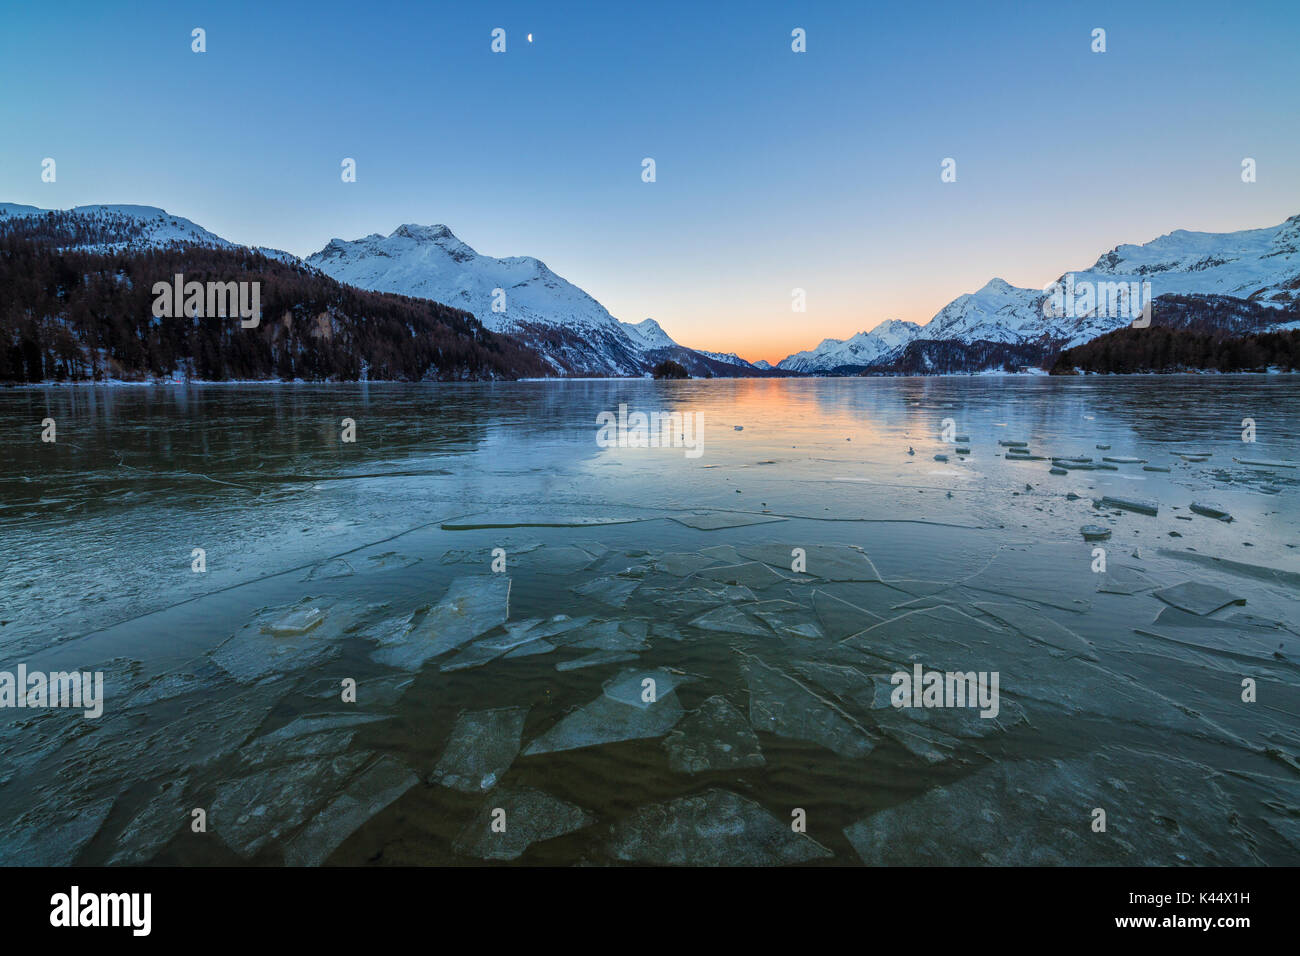 Eisschollen auf der Oberfläche der Silsersee in einem kalten Wintermorgen im Morgengrauen Oberengadin Kanton Graubünden Schweiz Europa Stockfoto